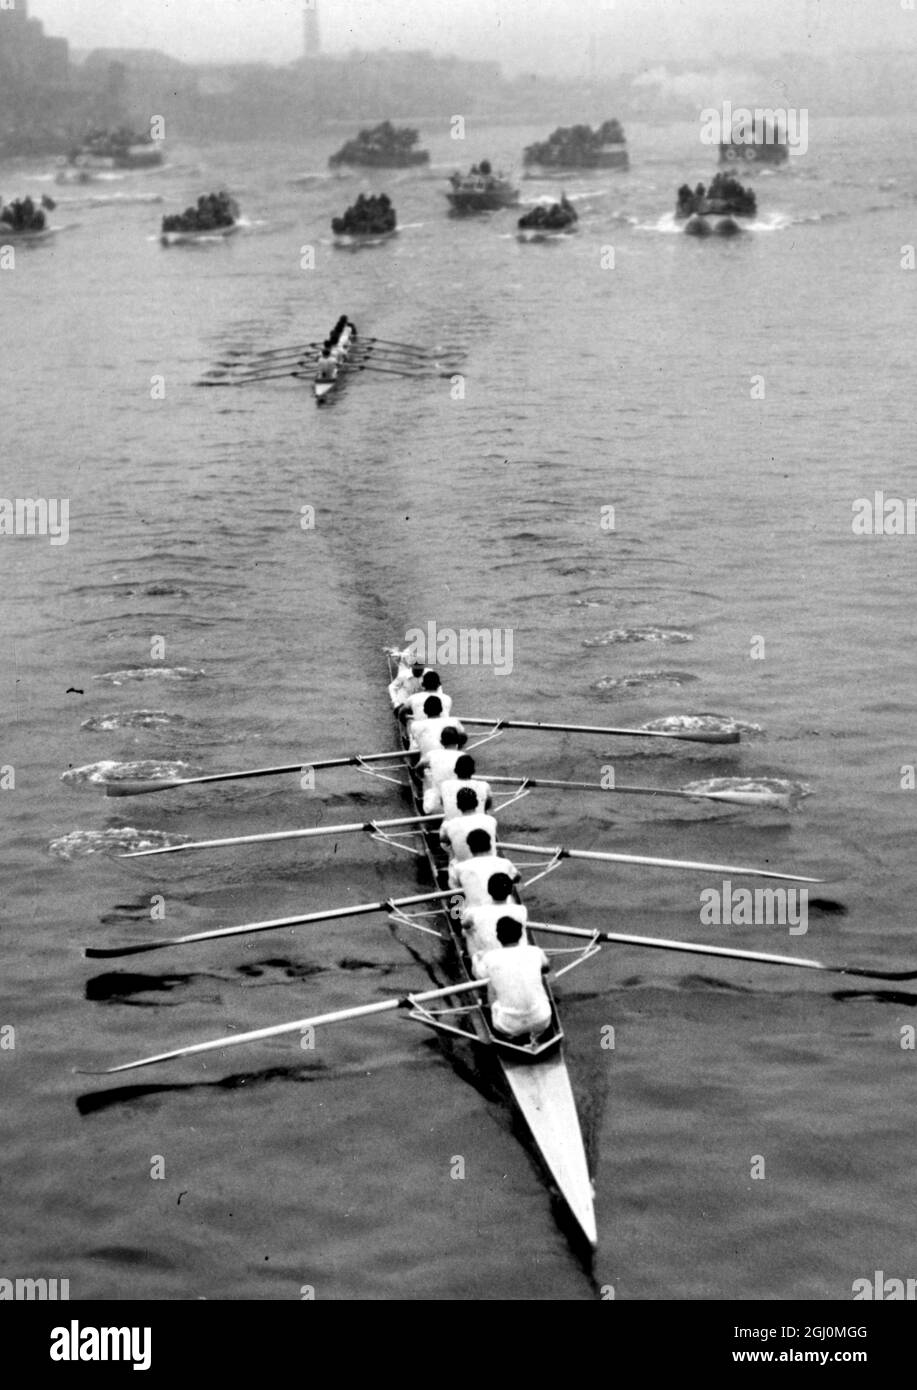 Cambridge vince la 104a gara in barca a 3 1-2 lunghezze da Oxford, stabilendo il terzo miglior tempo nella serie di gare tra i due equipaggi universitari. 4 aprile 1958 Foto Stock